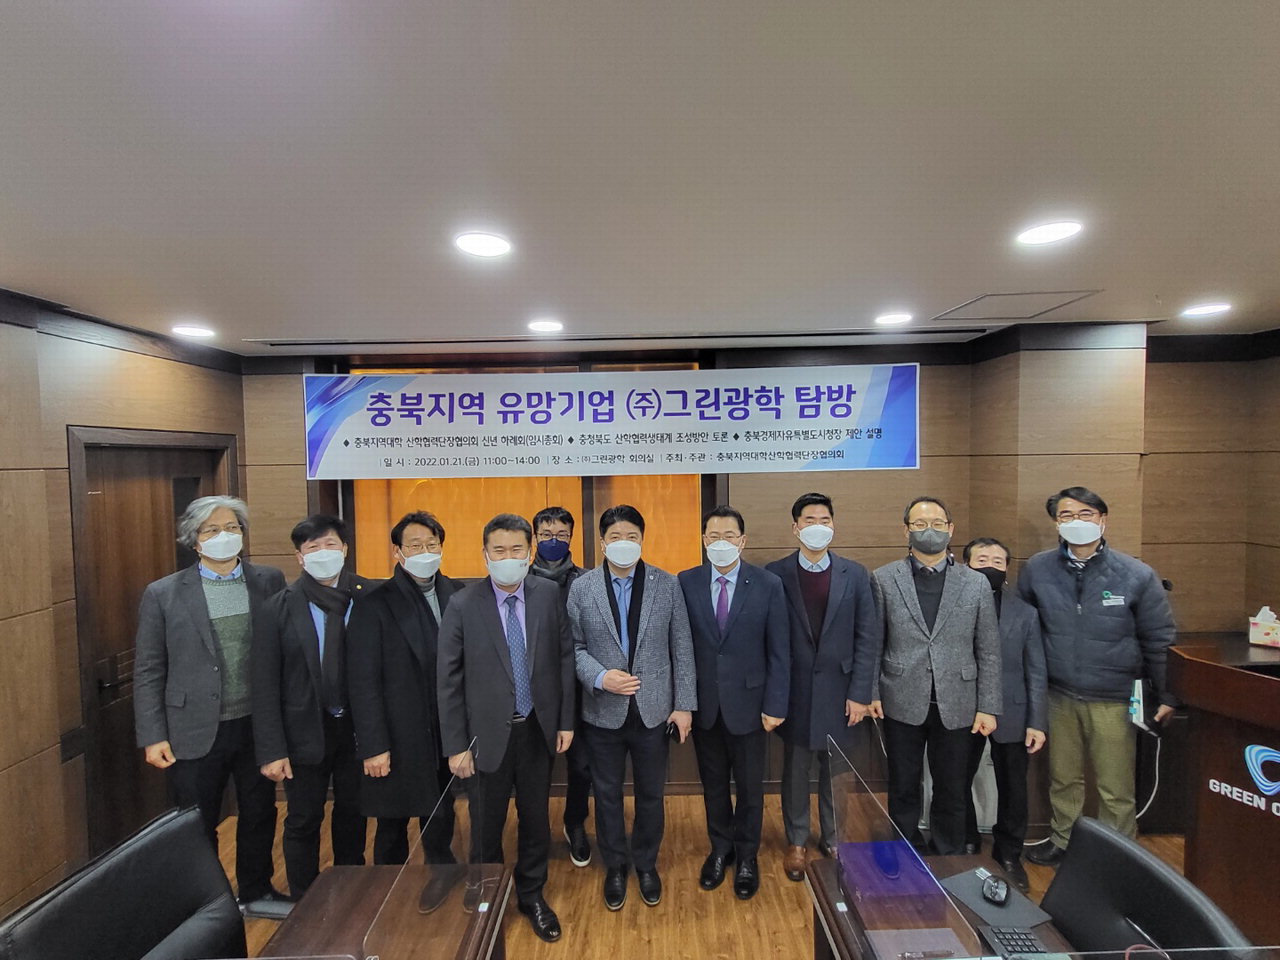 충북지역대학 산학협력단장협의회는 지난 21일 충북 오창 ㈜그린광학에서 충북 산학협력생태계조성을 위한 토론회를 개최했다. /유원대학교